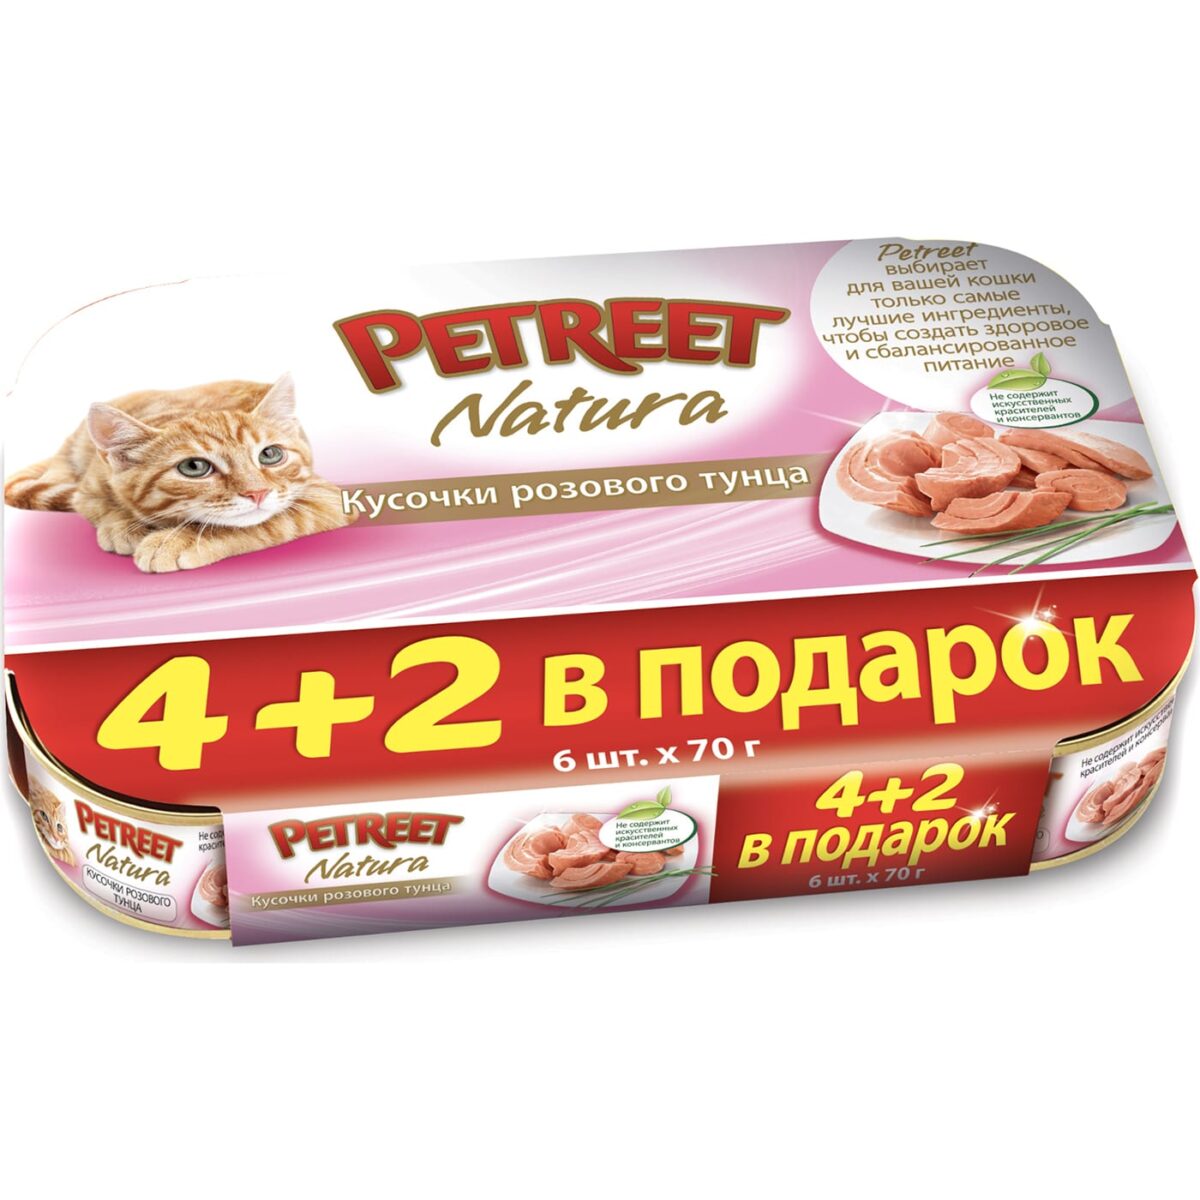 Консервы «Petreet розового тунца» для кошек (Жестяная банка, multipack 4+2 в подарок, 6*70г)